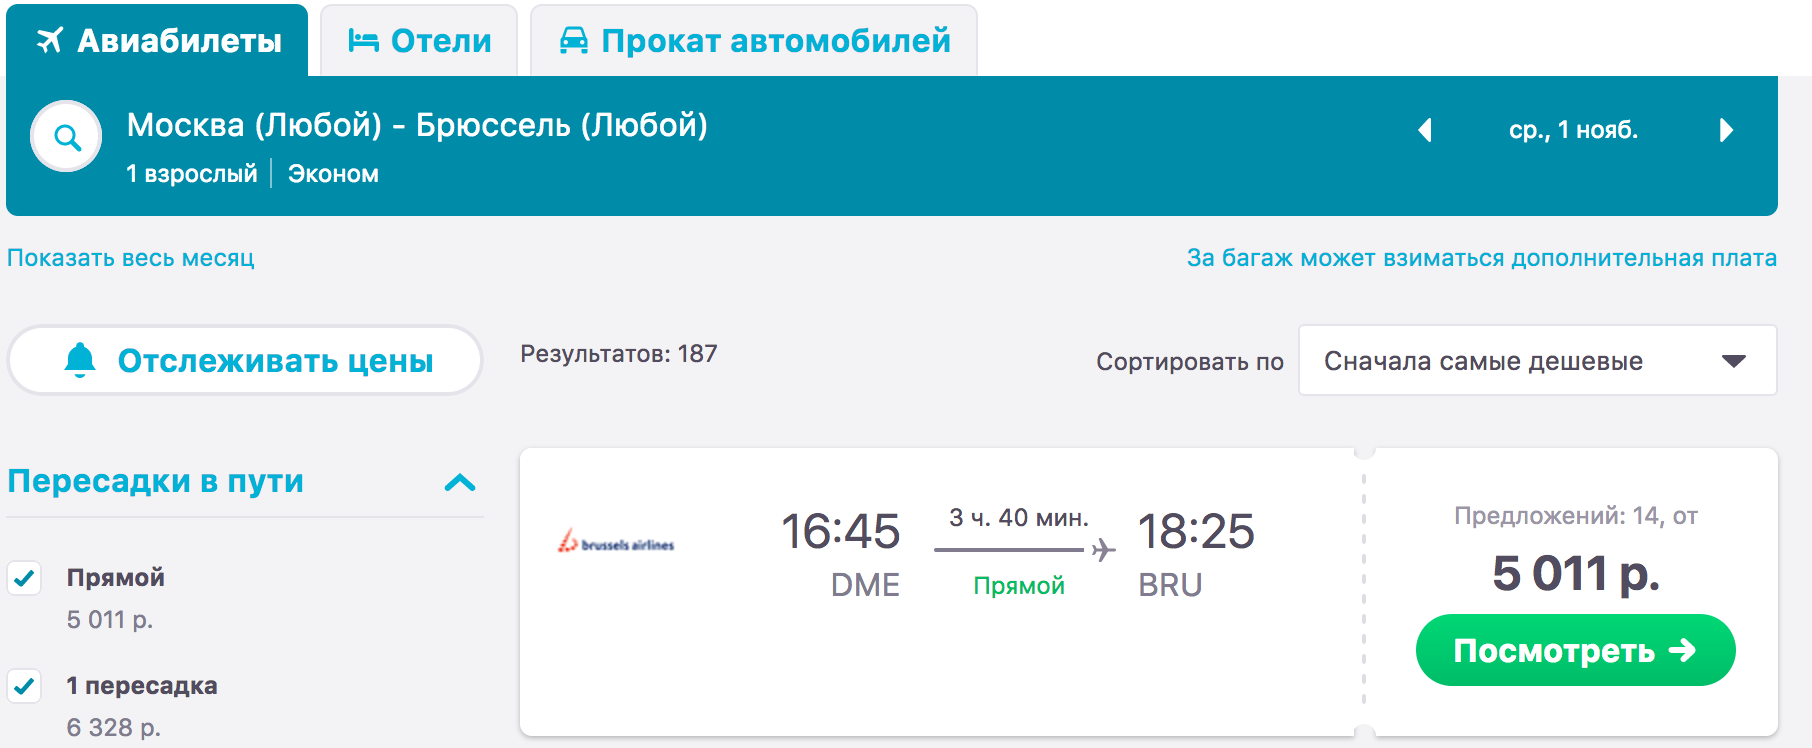 Билеты на самолет екатеринбург астрахань стоимость авиабилетов до крыма с москвы